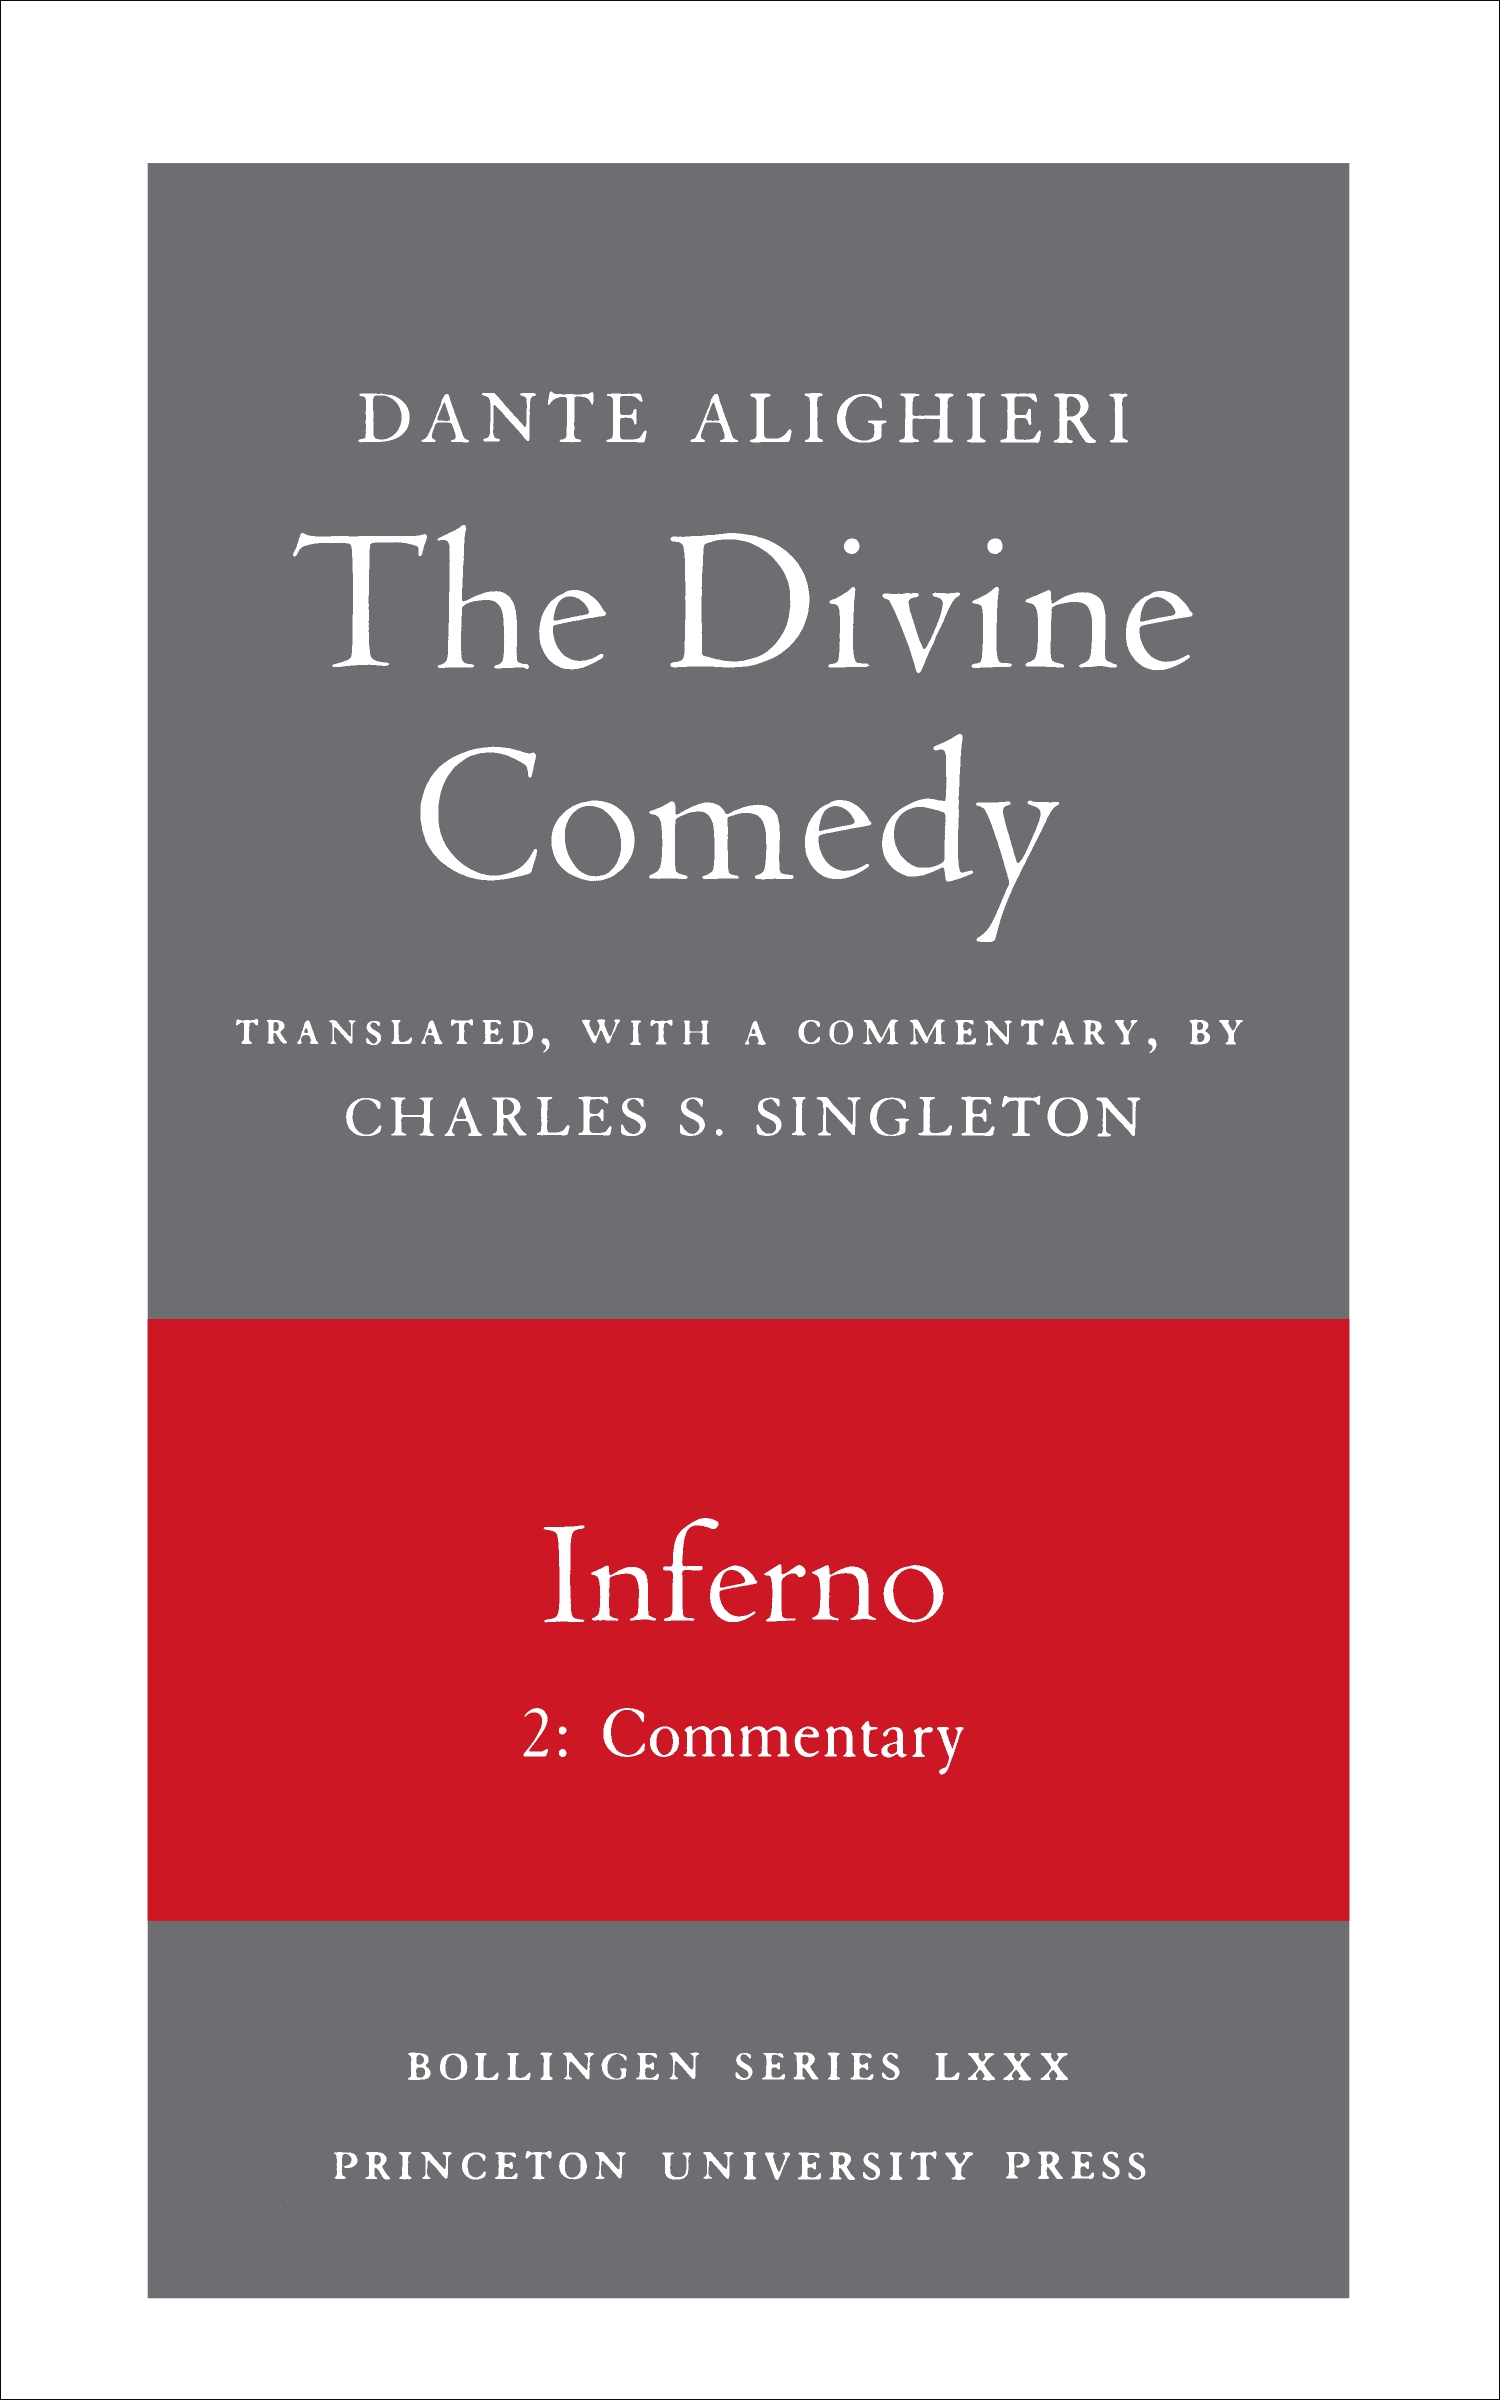 Understanding Dante's Inferno